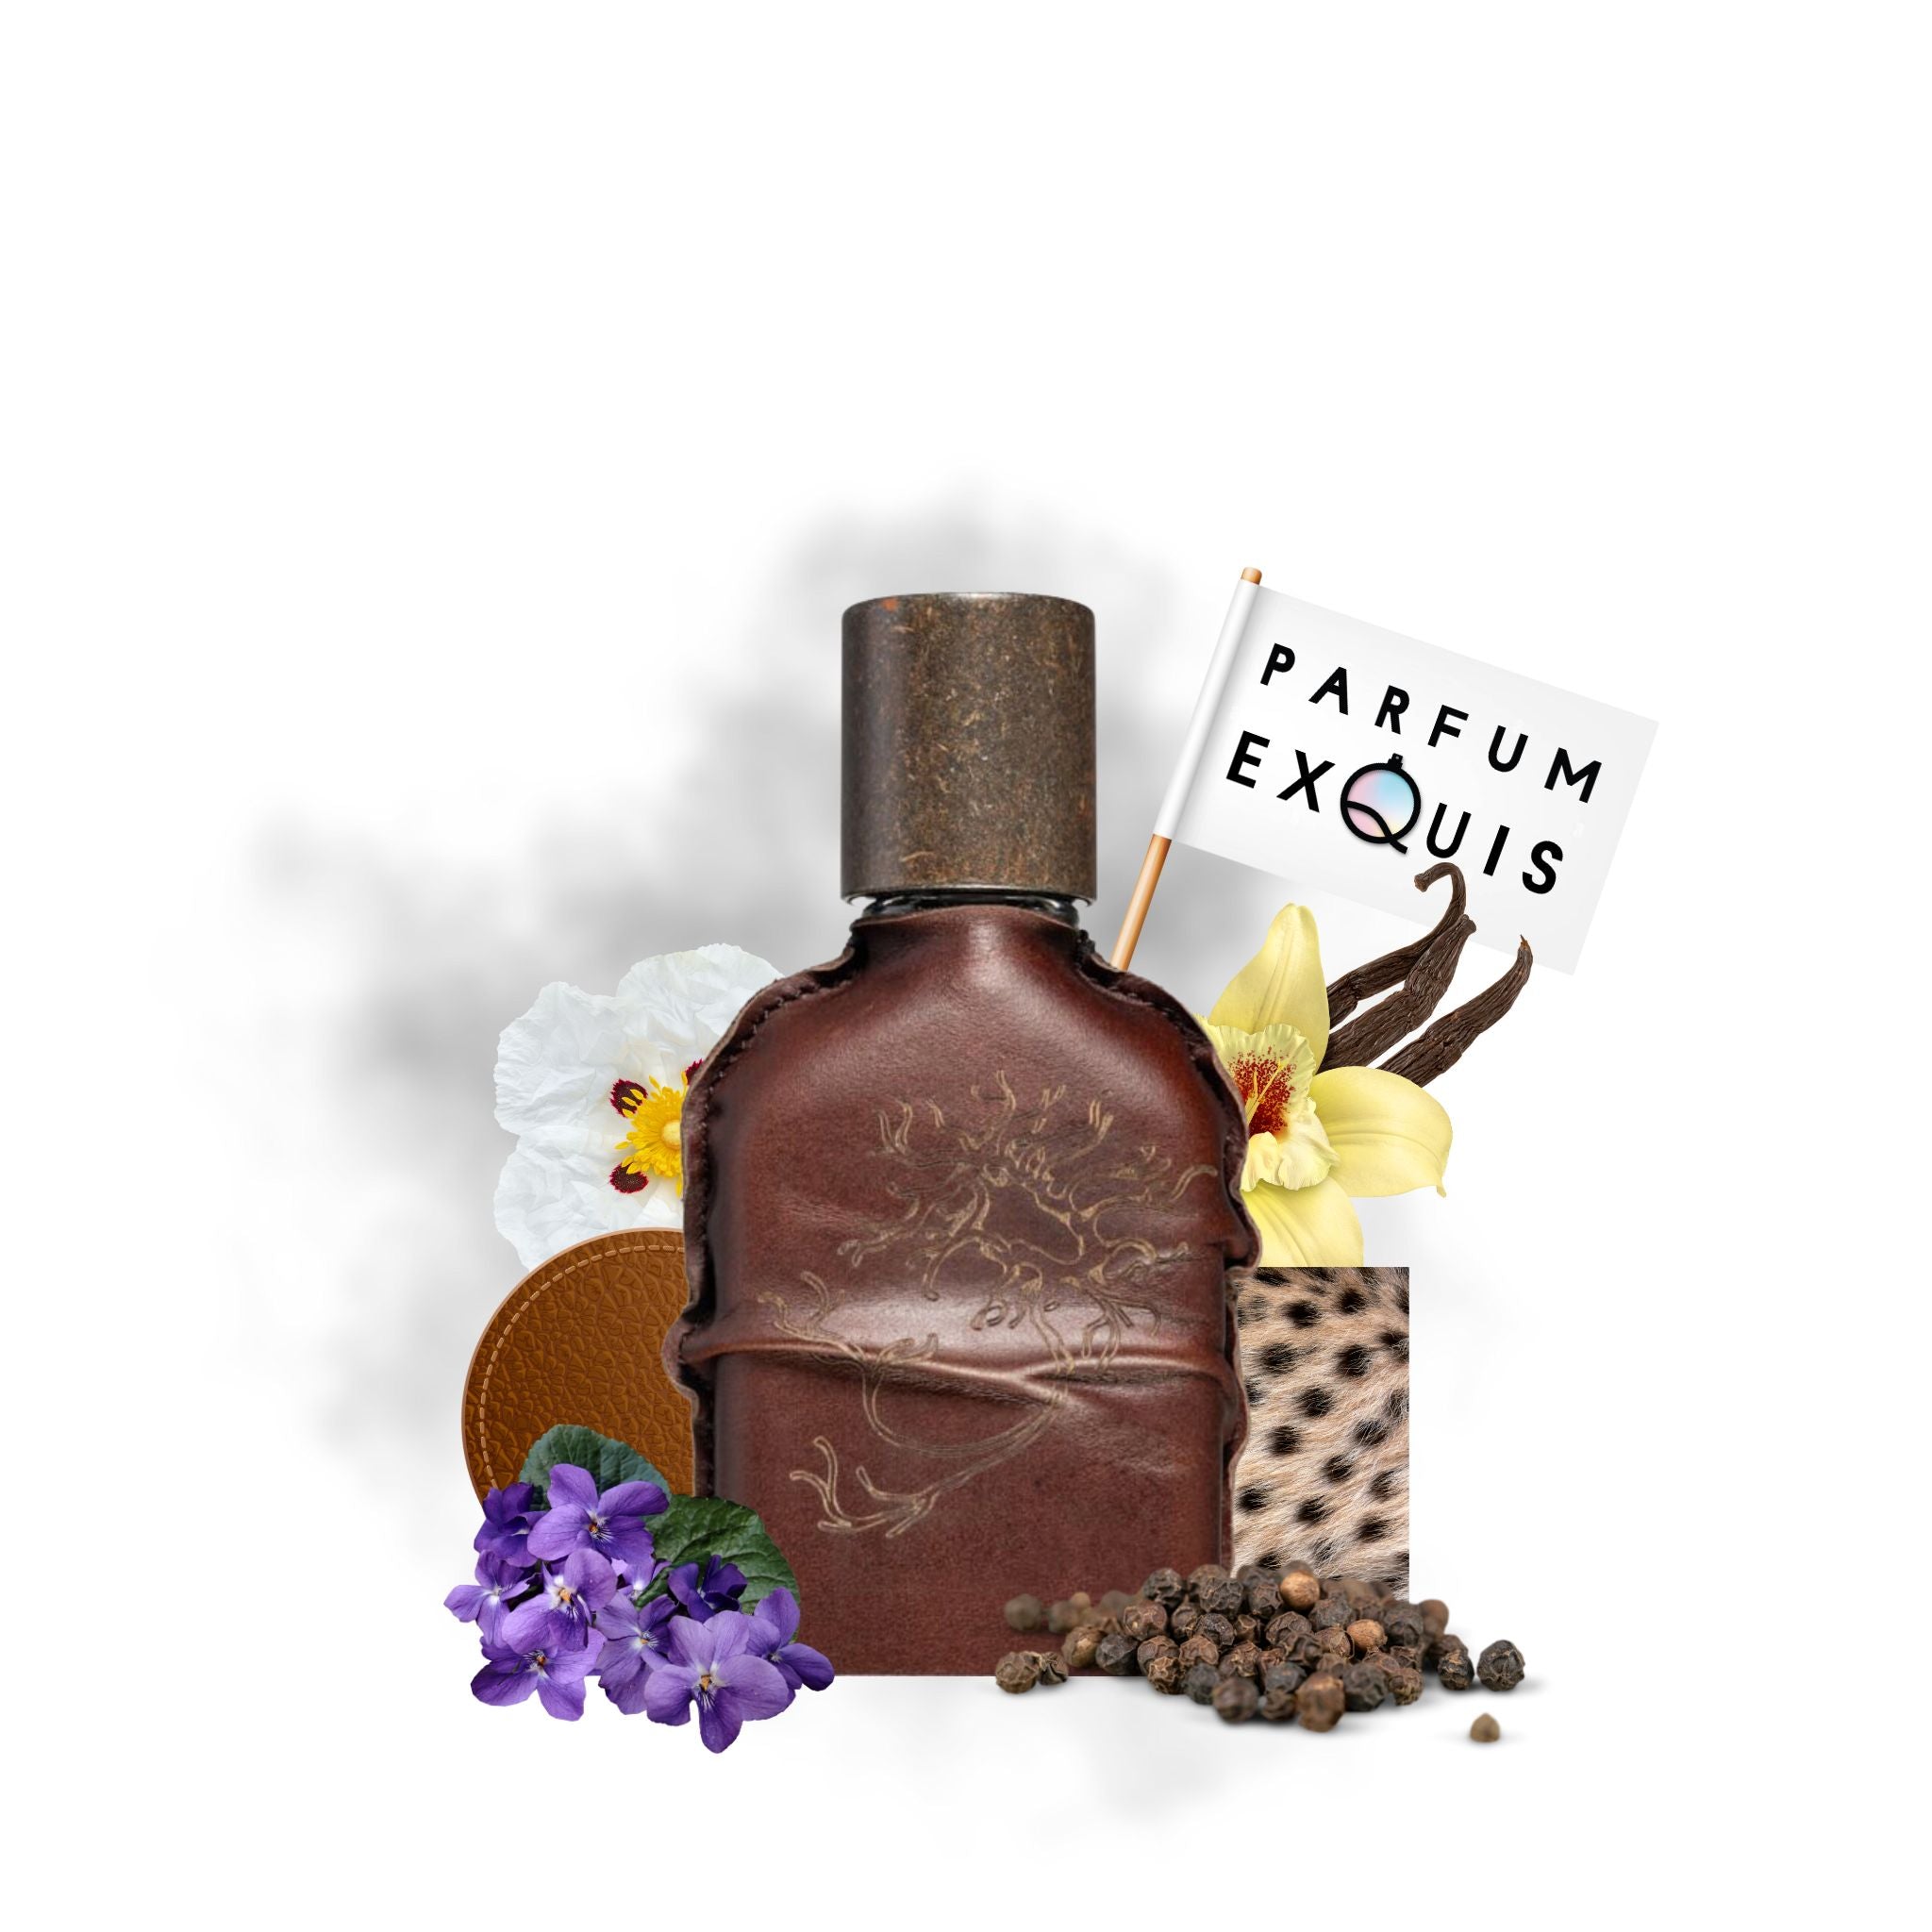 Orto Parisi Cuoium perfume